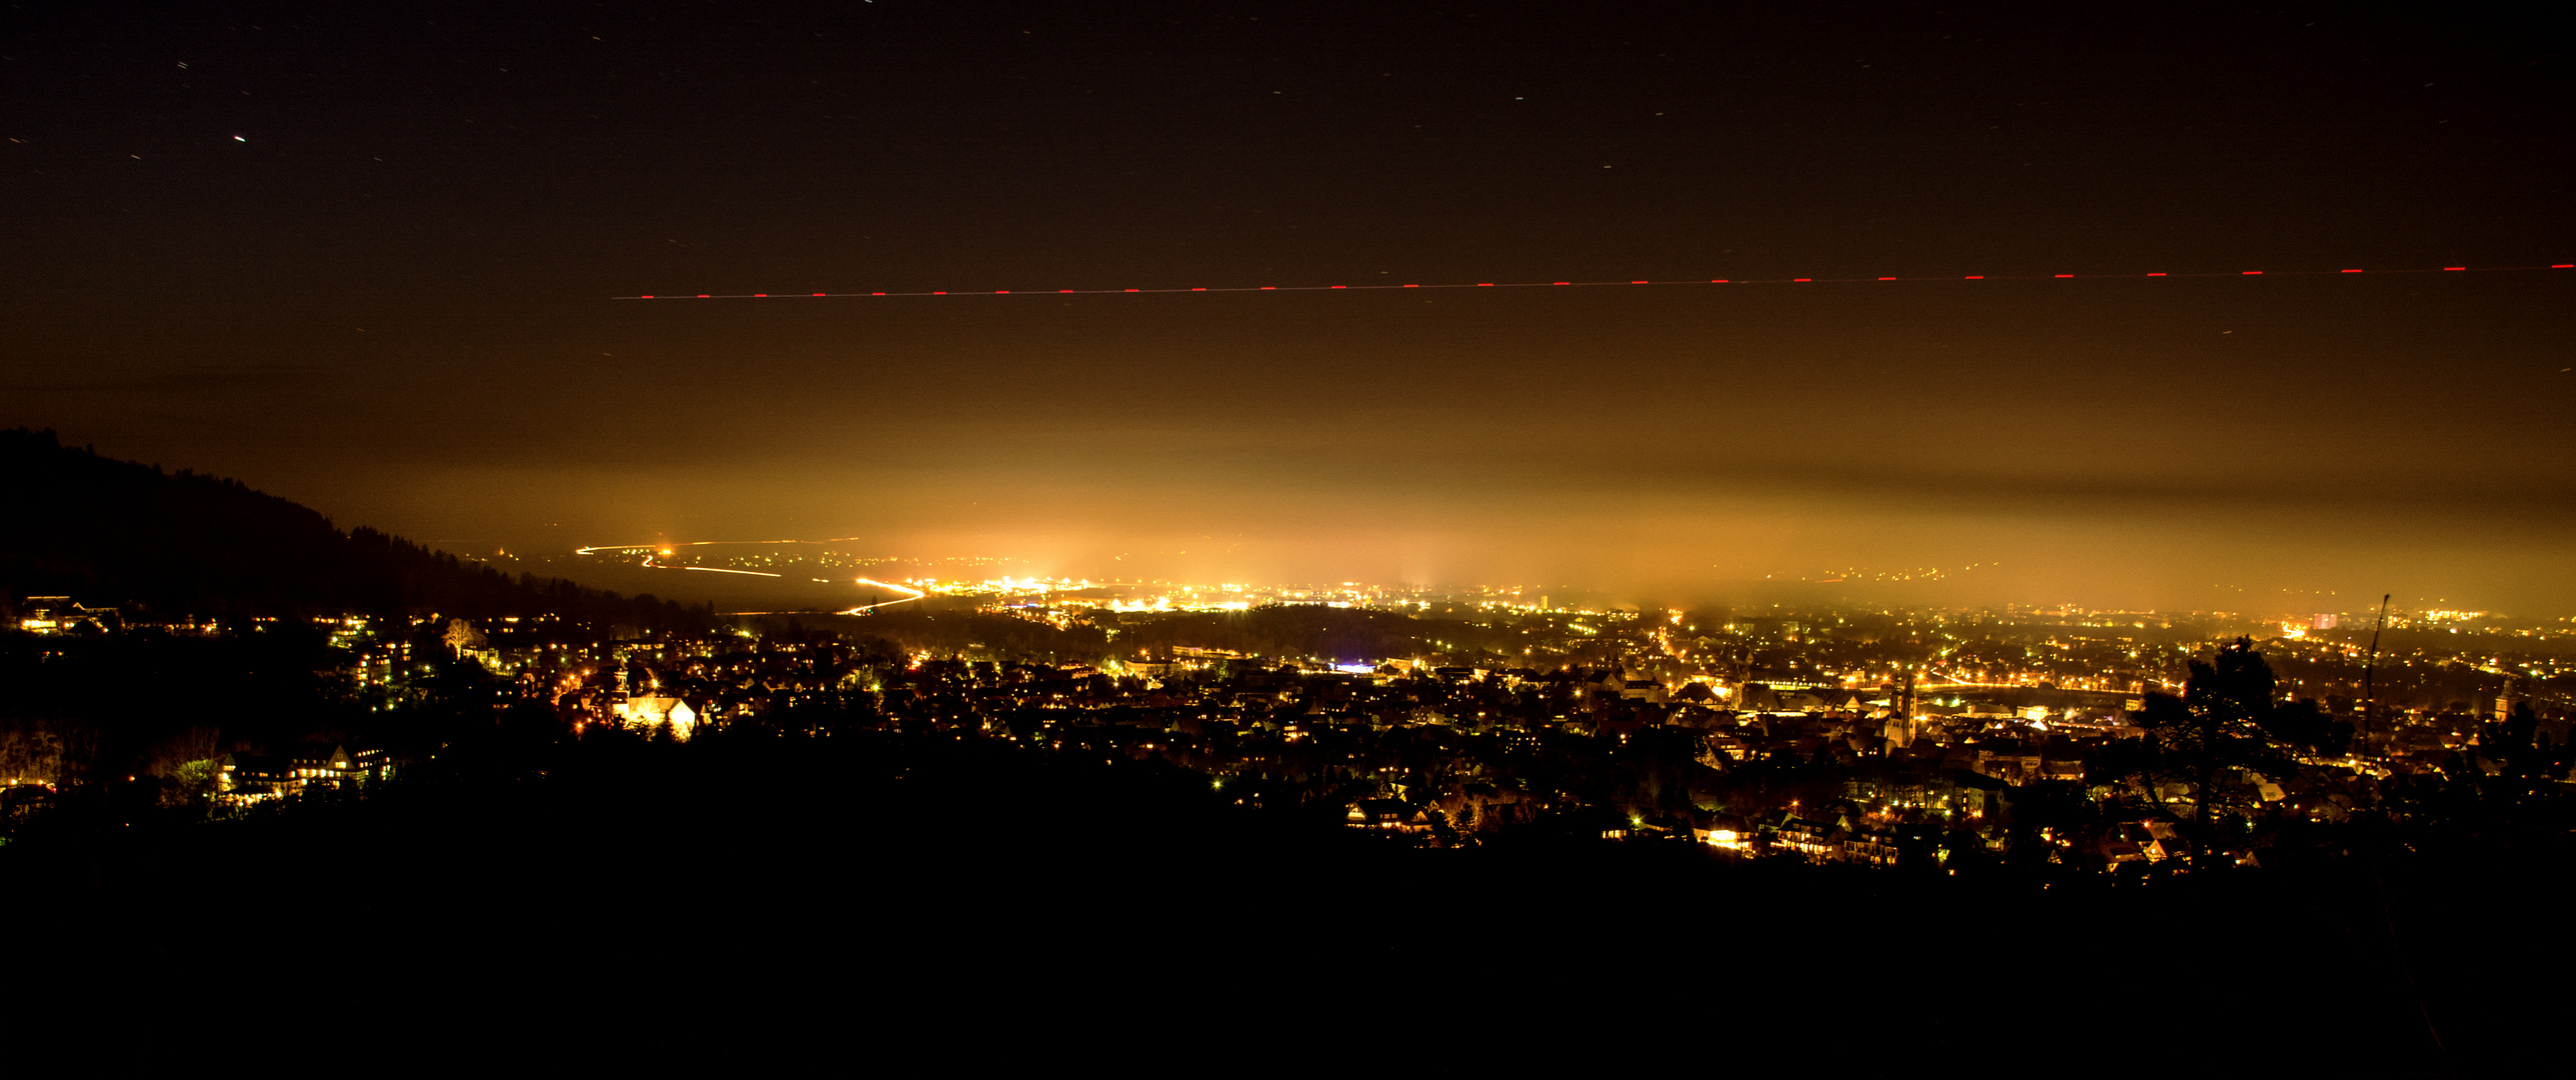 Goslar bei Nacht... fliegen sogar Ufos am Himmel :-)